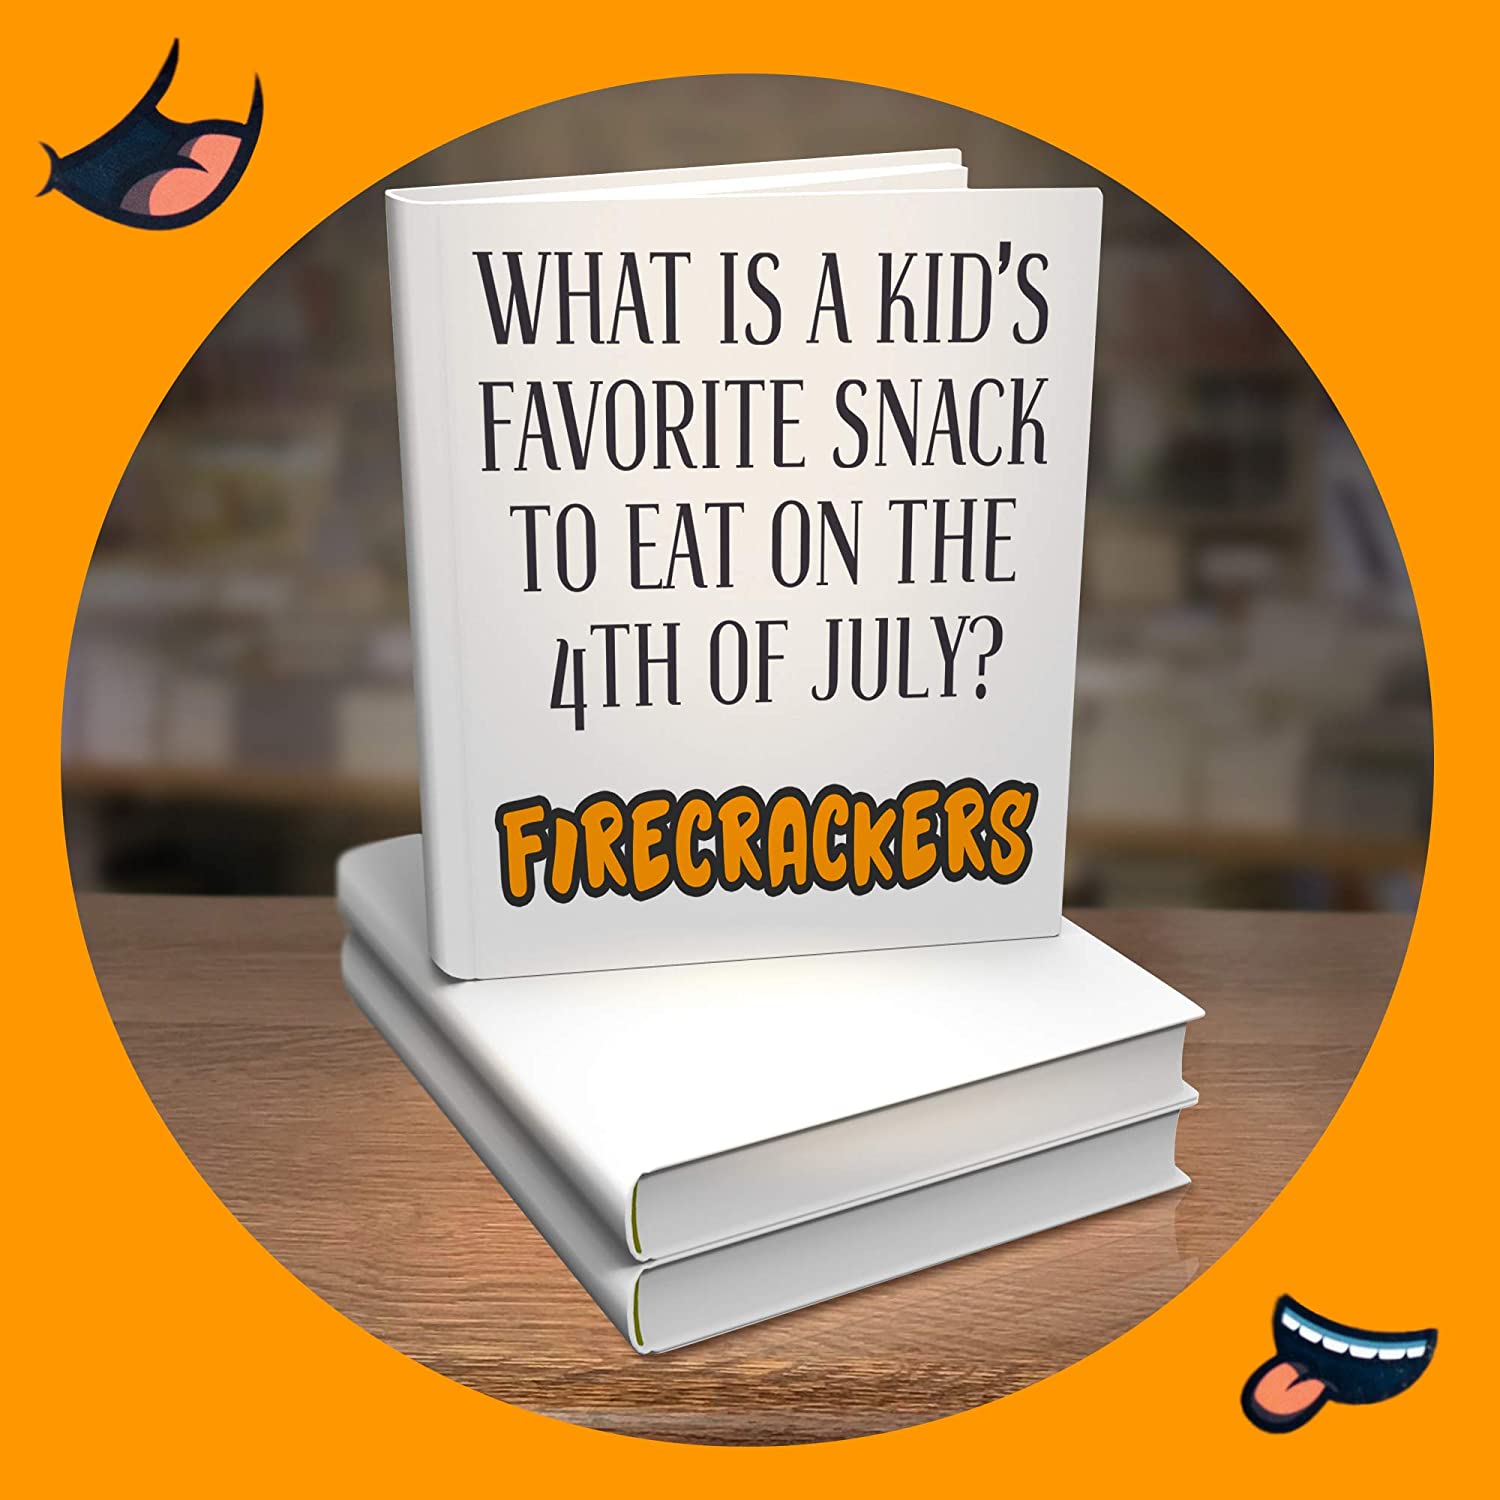 Jo's Jokin' Jokes Book for Kids by Kids Volume 1 - Rapid Brands